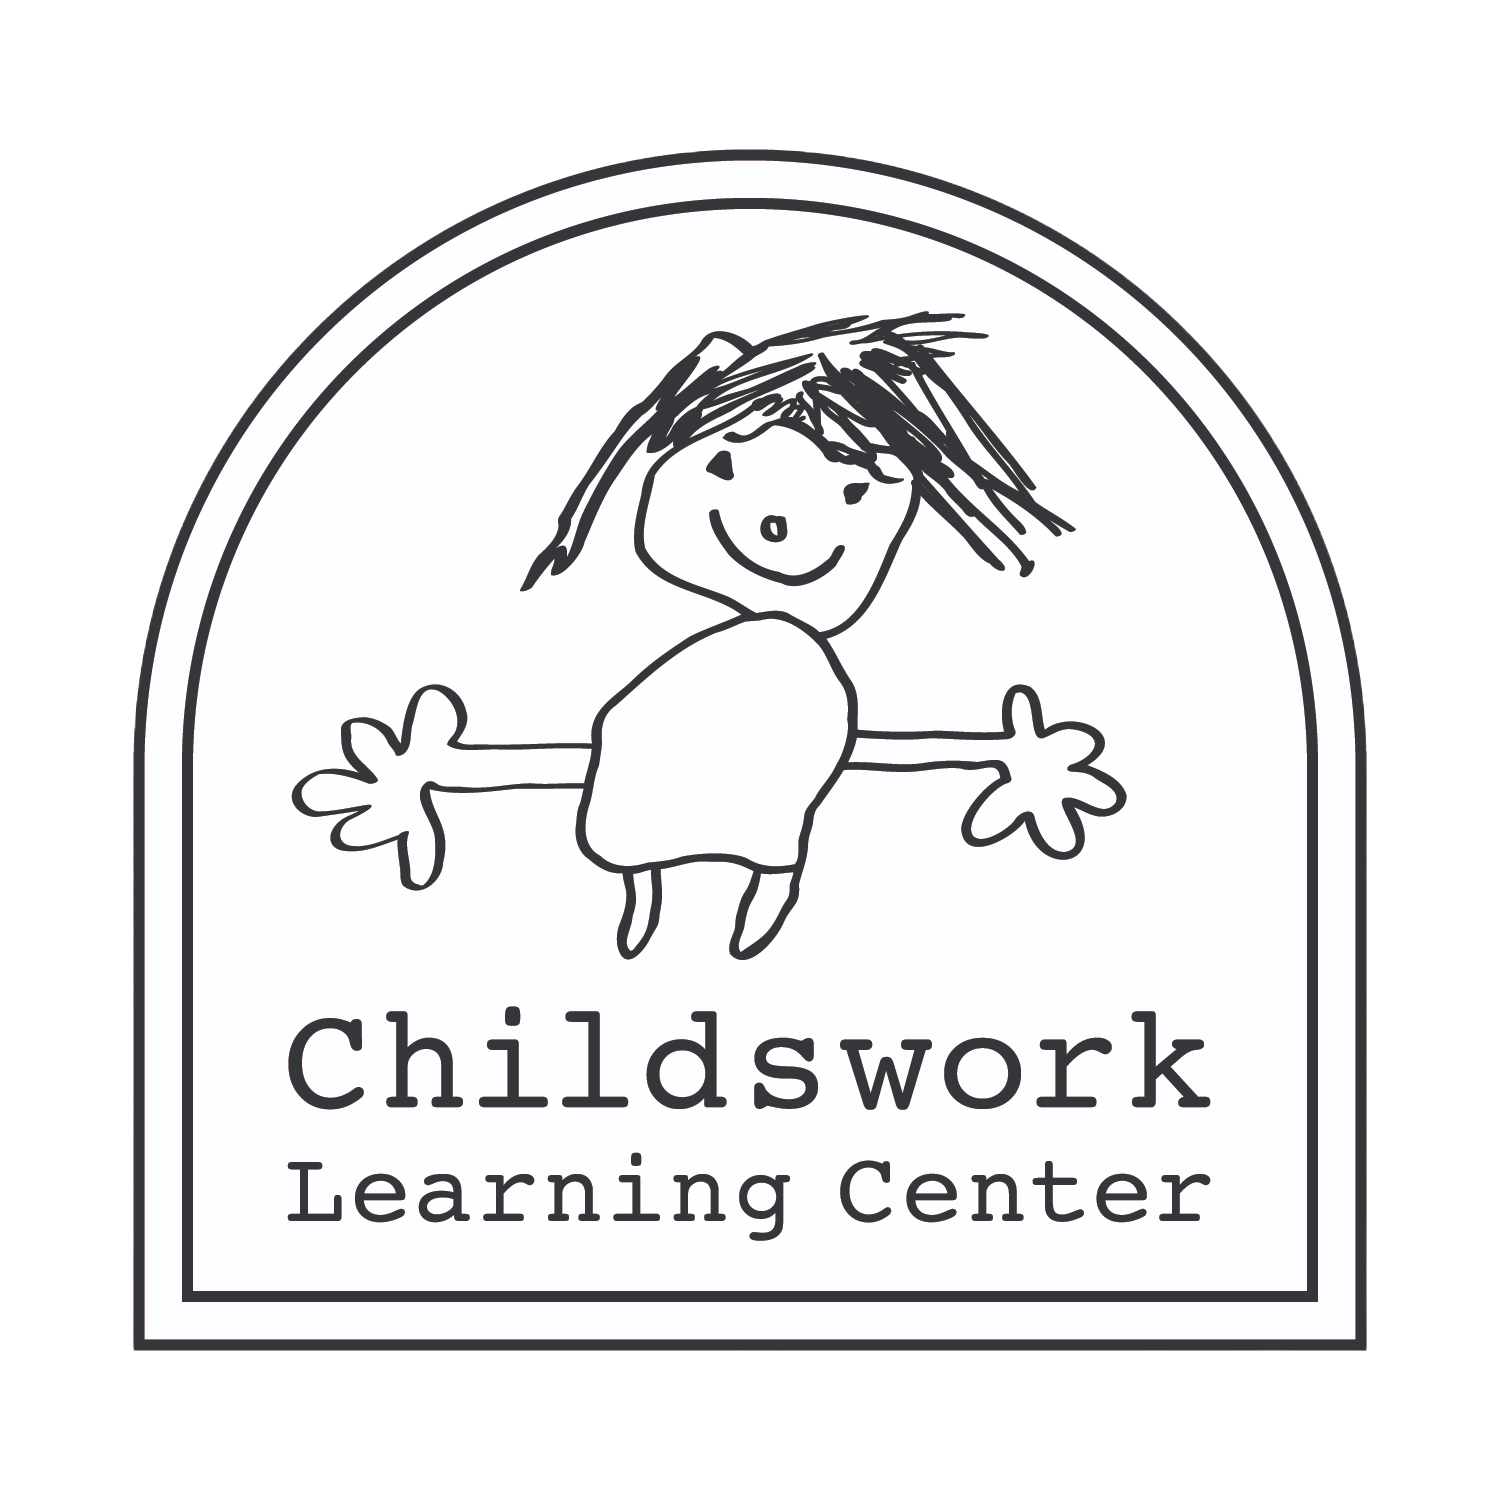 Childswork Learning Center